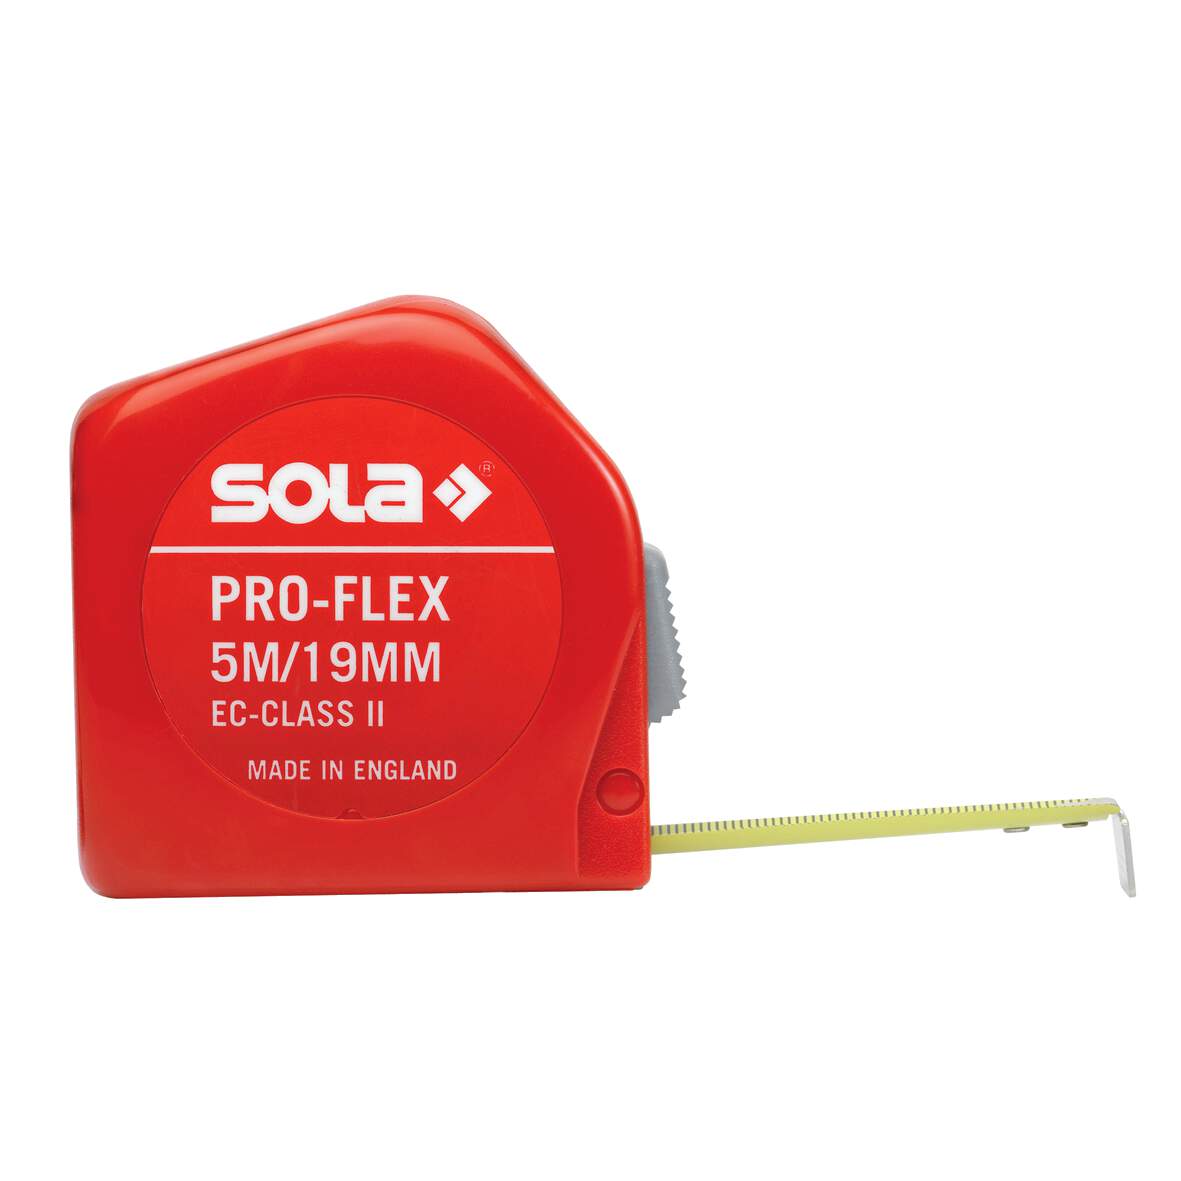 1211263 - Rollmeter Pro-Flex